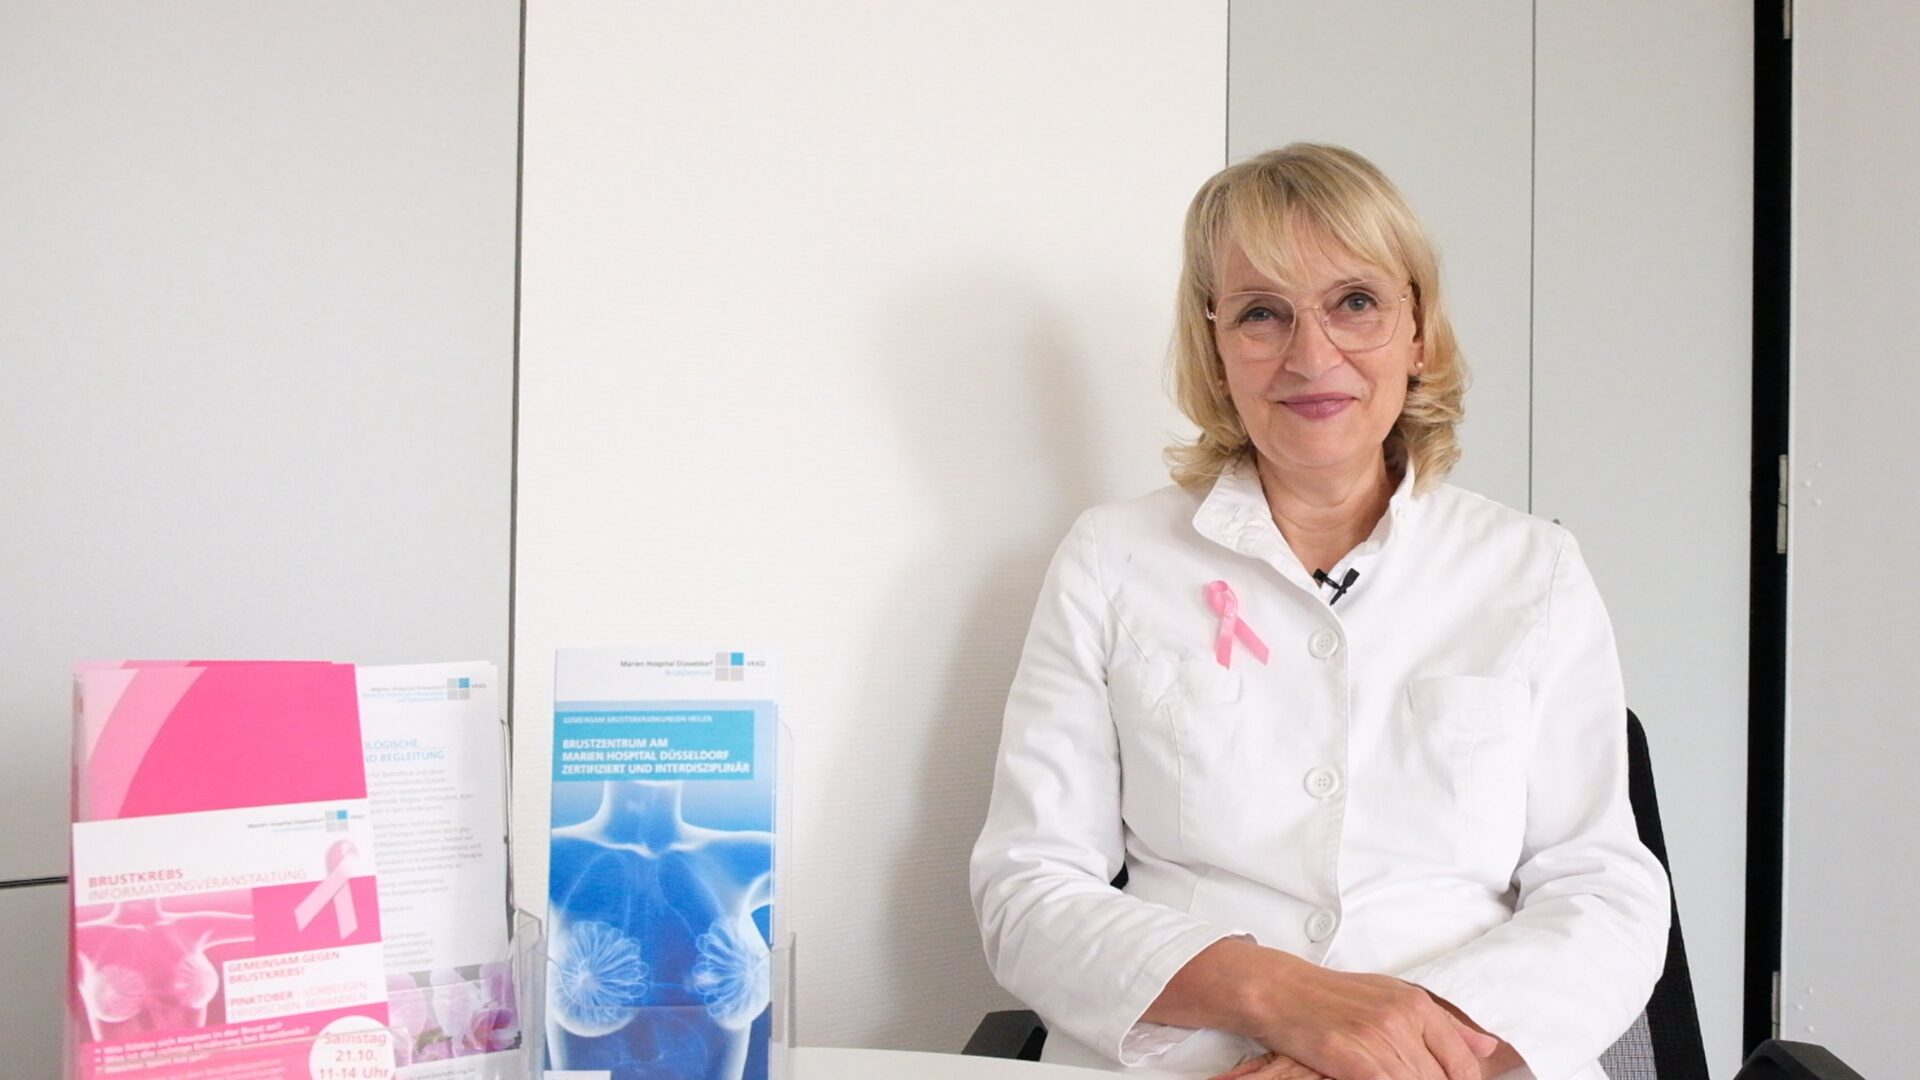 Frau Dr. Findt, Chefärztin Brustkrebszentrum Düsseldorf